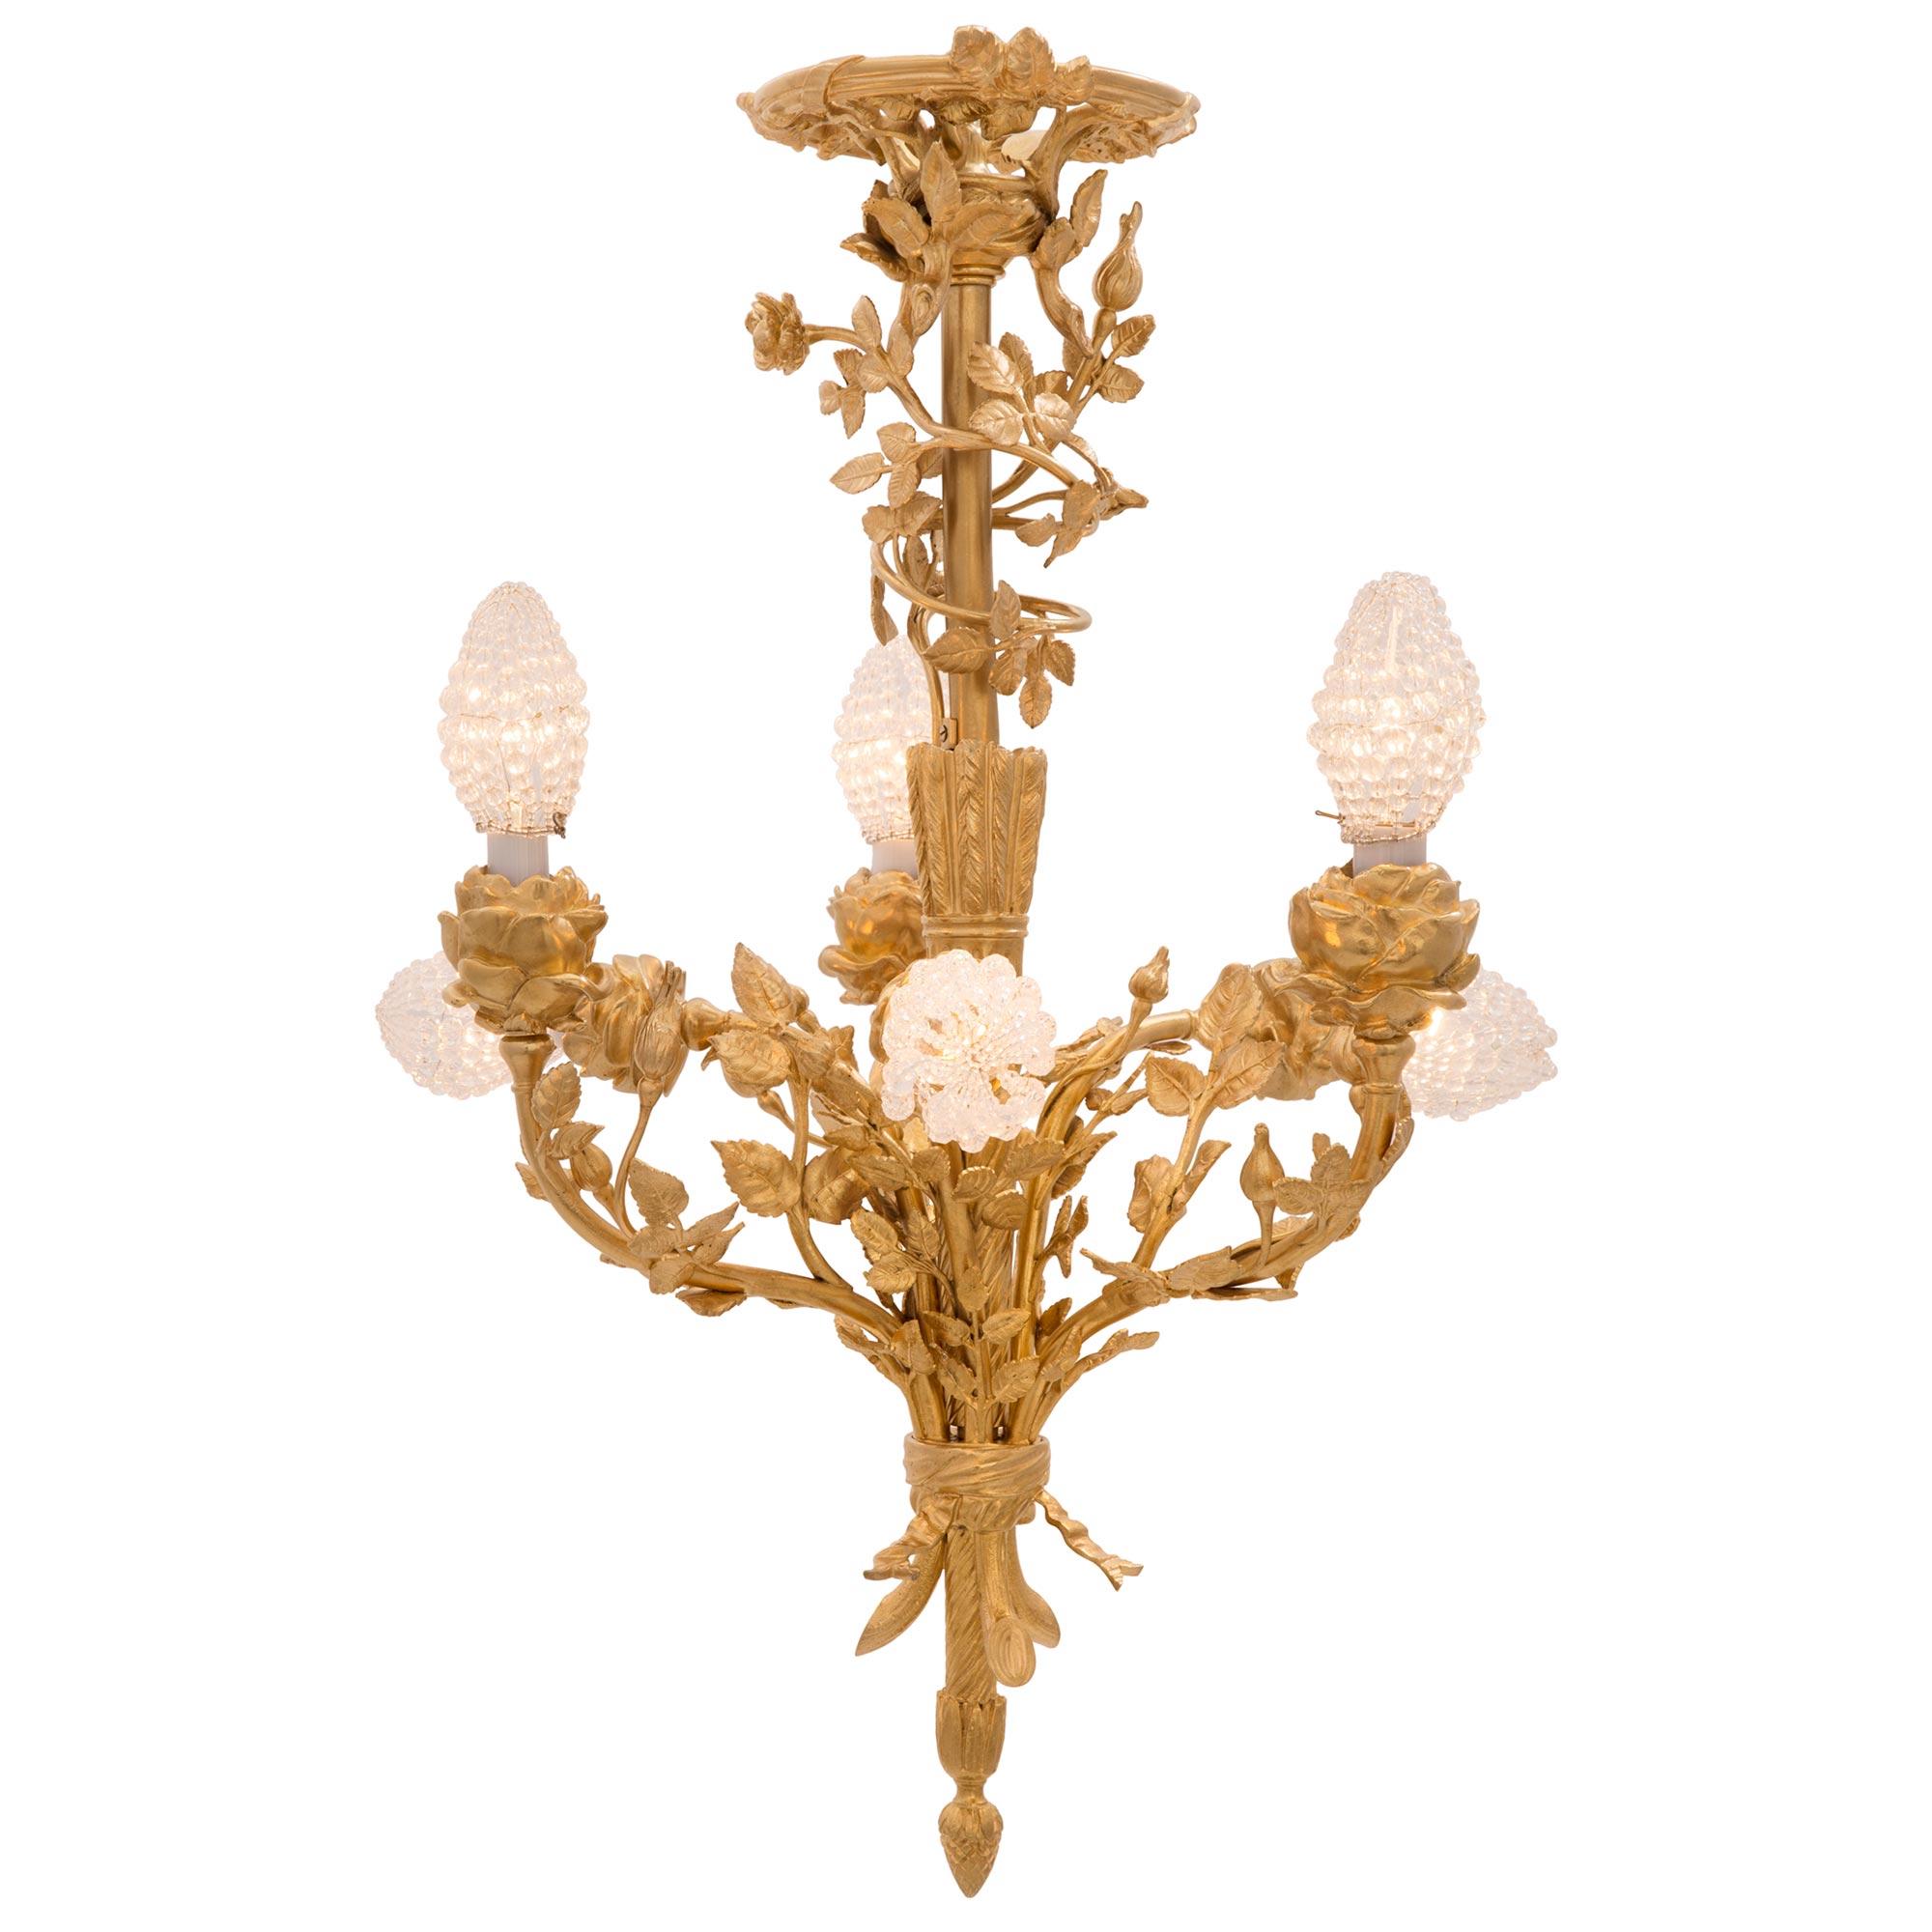 Un très élégant lustre français du 19ème siècle de style Louis XVI et de la période Belle Époque en bronze doré. Le lustre à six bras est centré par un magnifique épi de gland sous le fut central cannelé en spirale circulaire. Les six bras